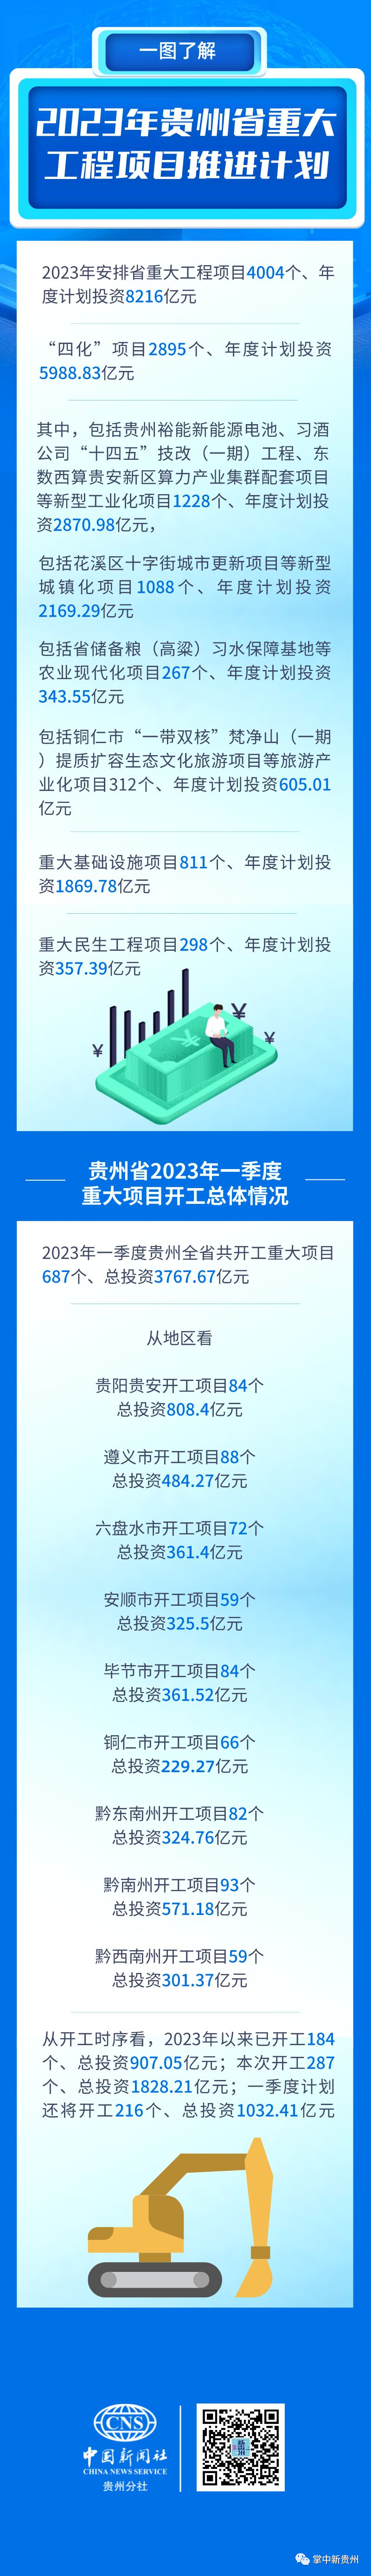 4158个项目年度投资8003亿元，贵州省2023年重大清单来了